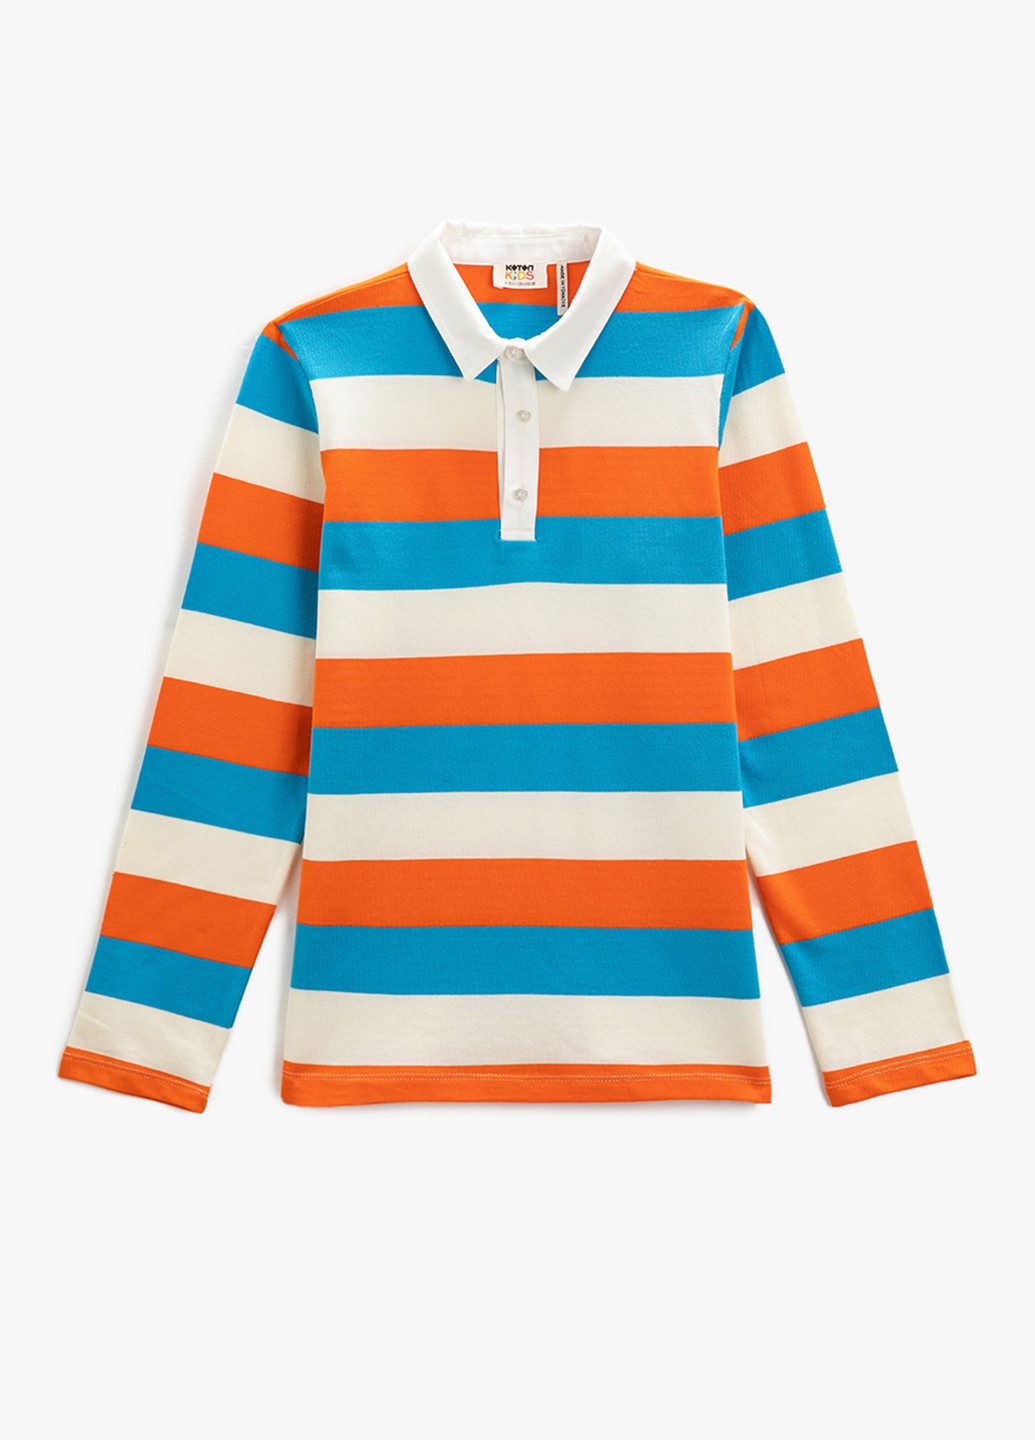 Цветная детская футболка-поло для мальчика KOTON в полоску